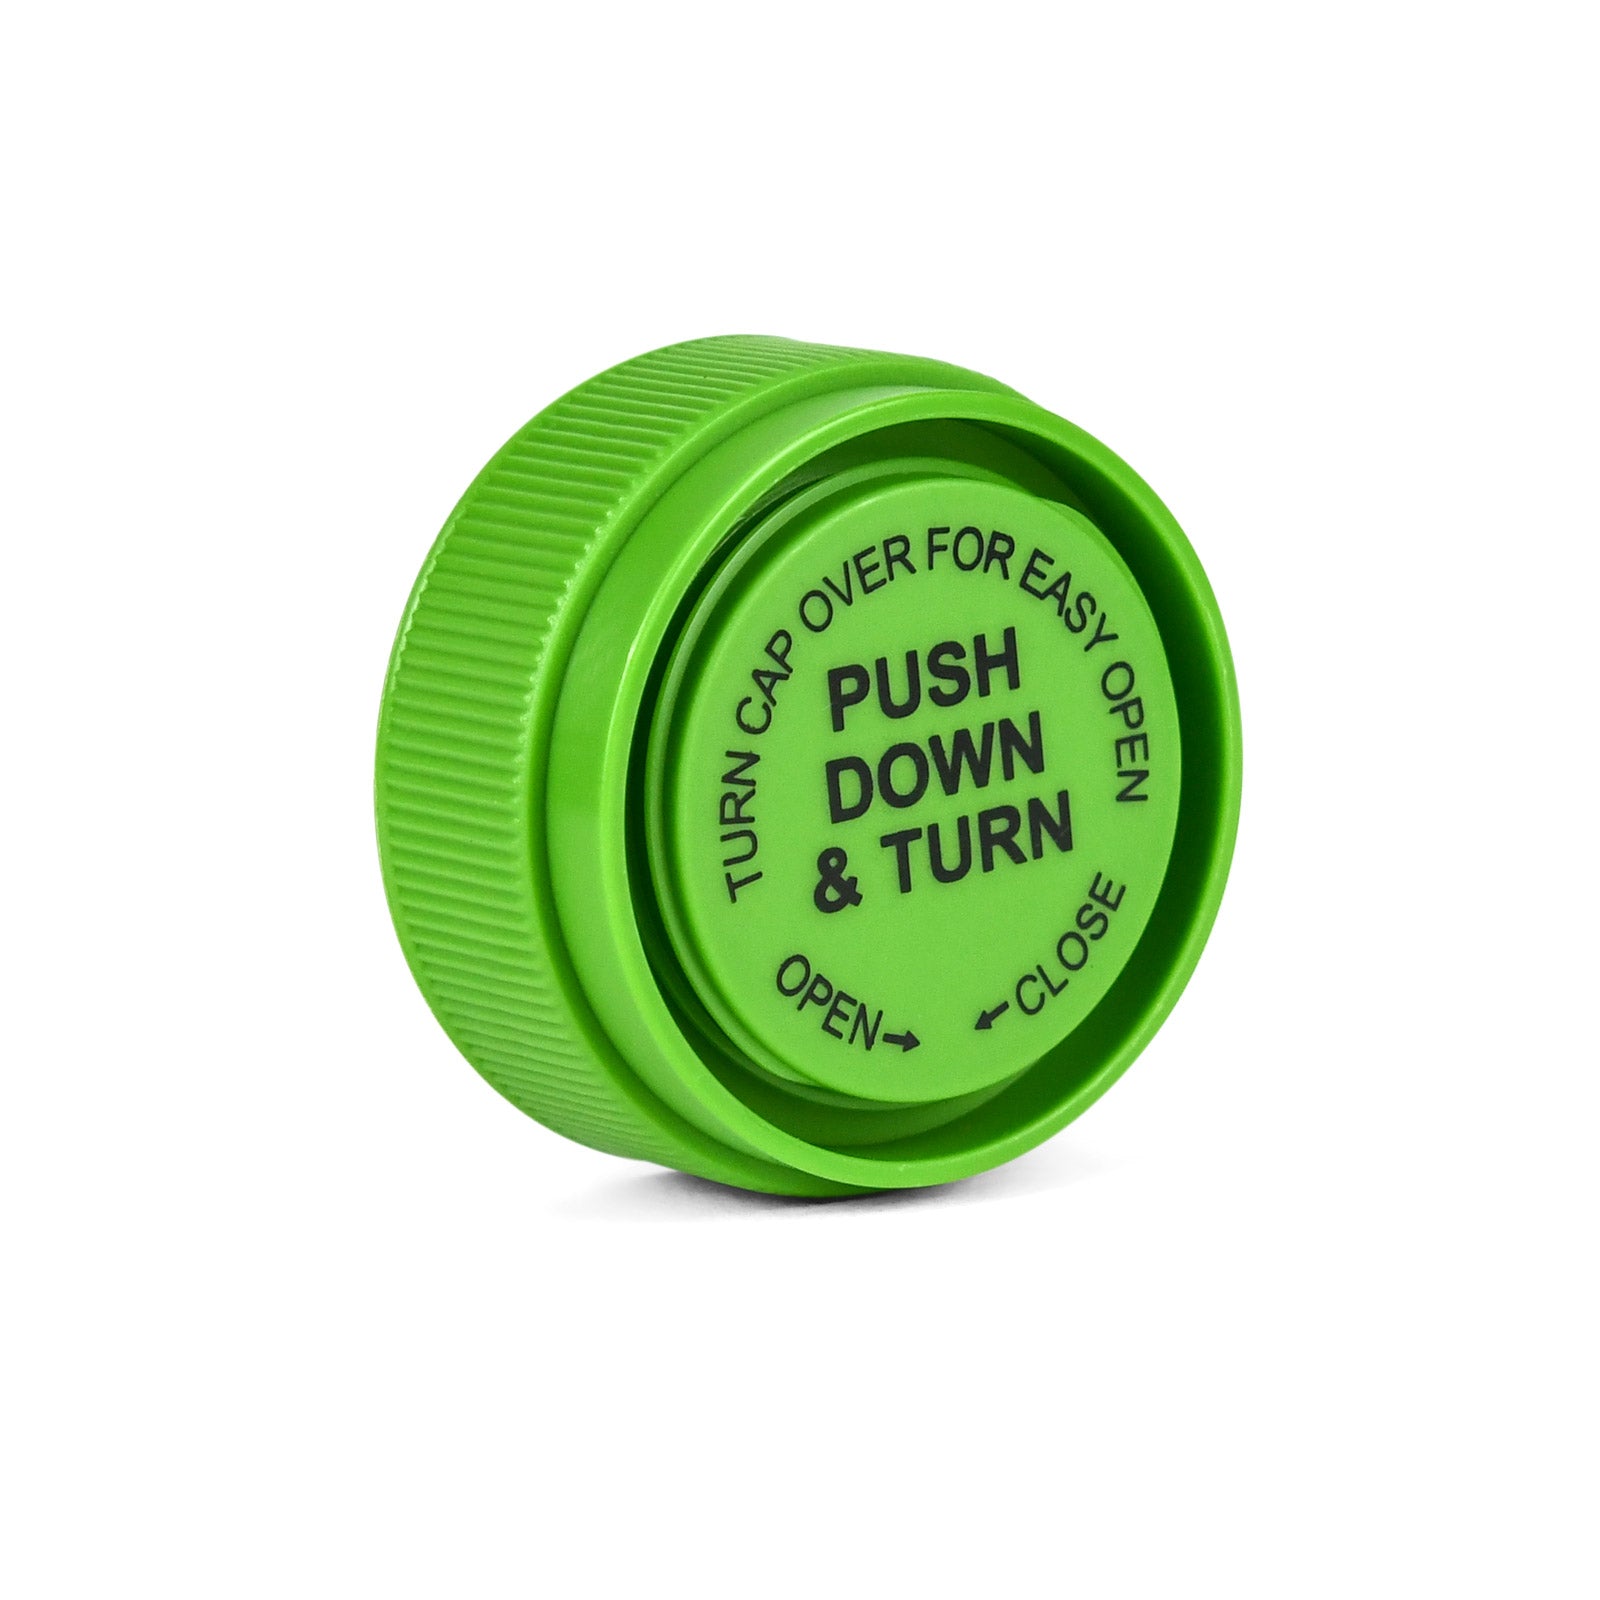 13 Dram Reversible Cap Opaque Green - 275 Count